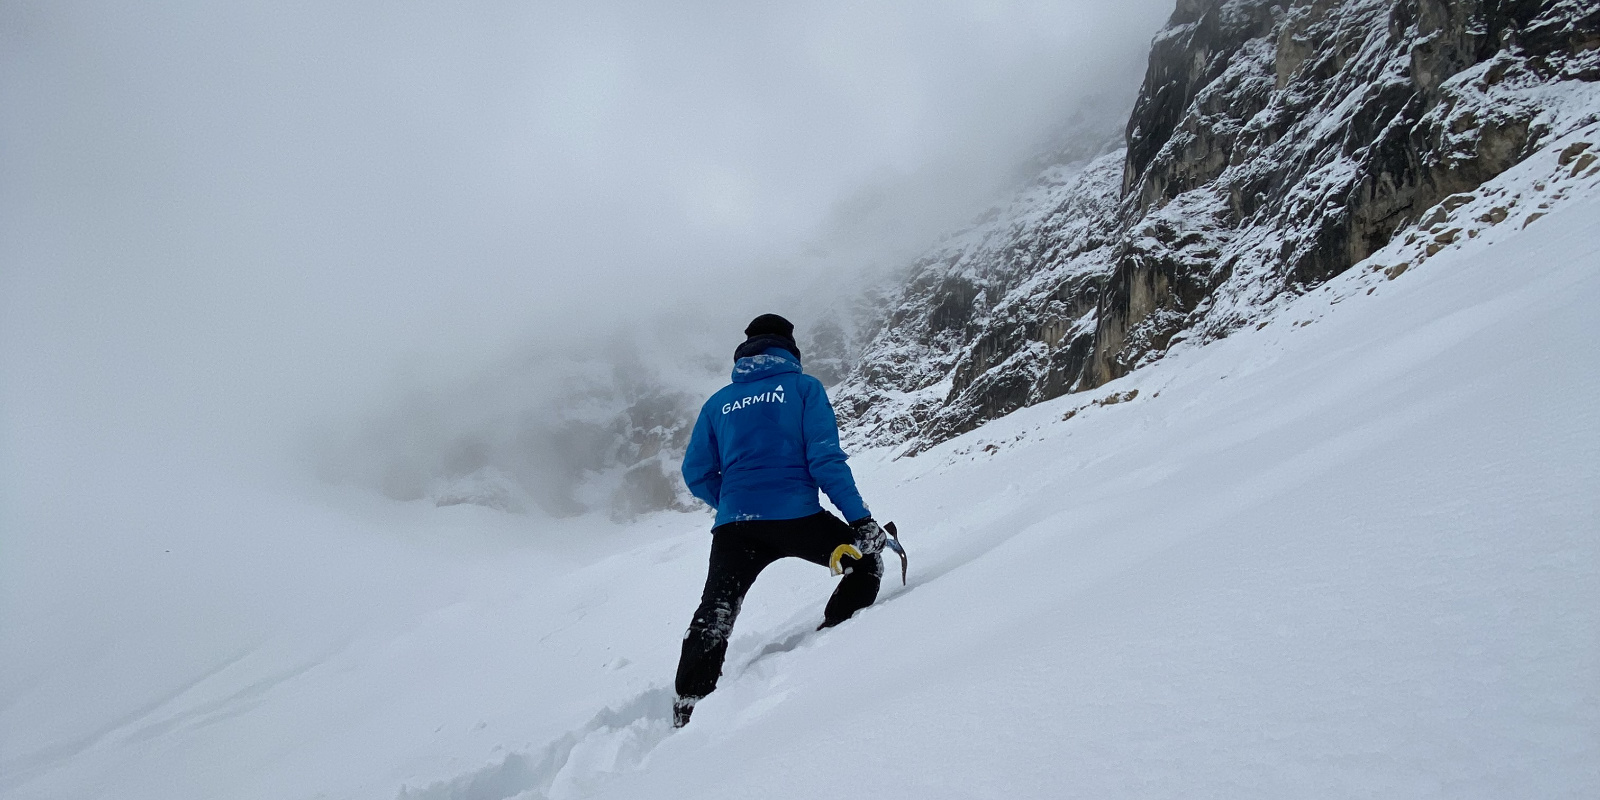 Garmin Mitarbeiter und Bergsteiger Tobias Eckhardt im Schnee